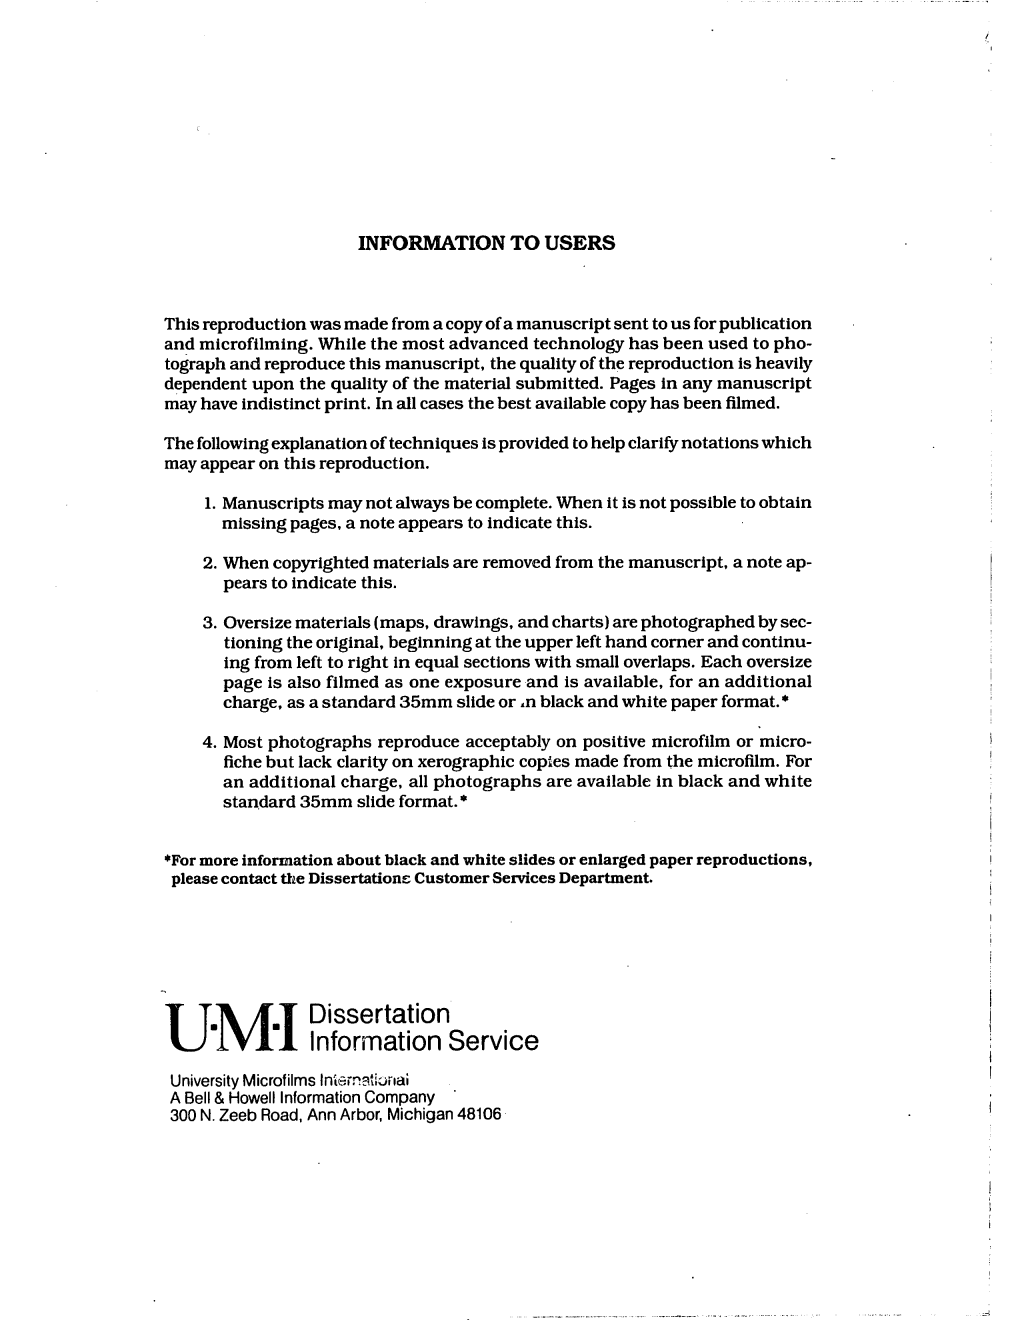 Dissertation Information Service